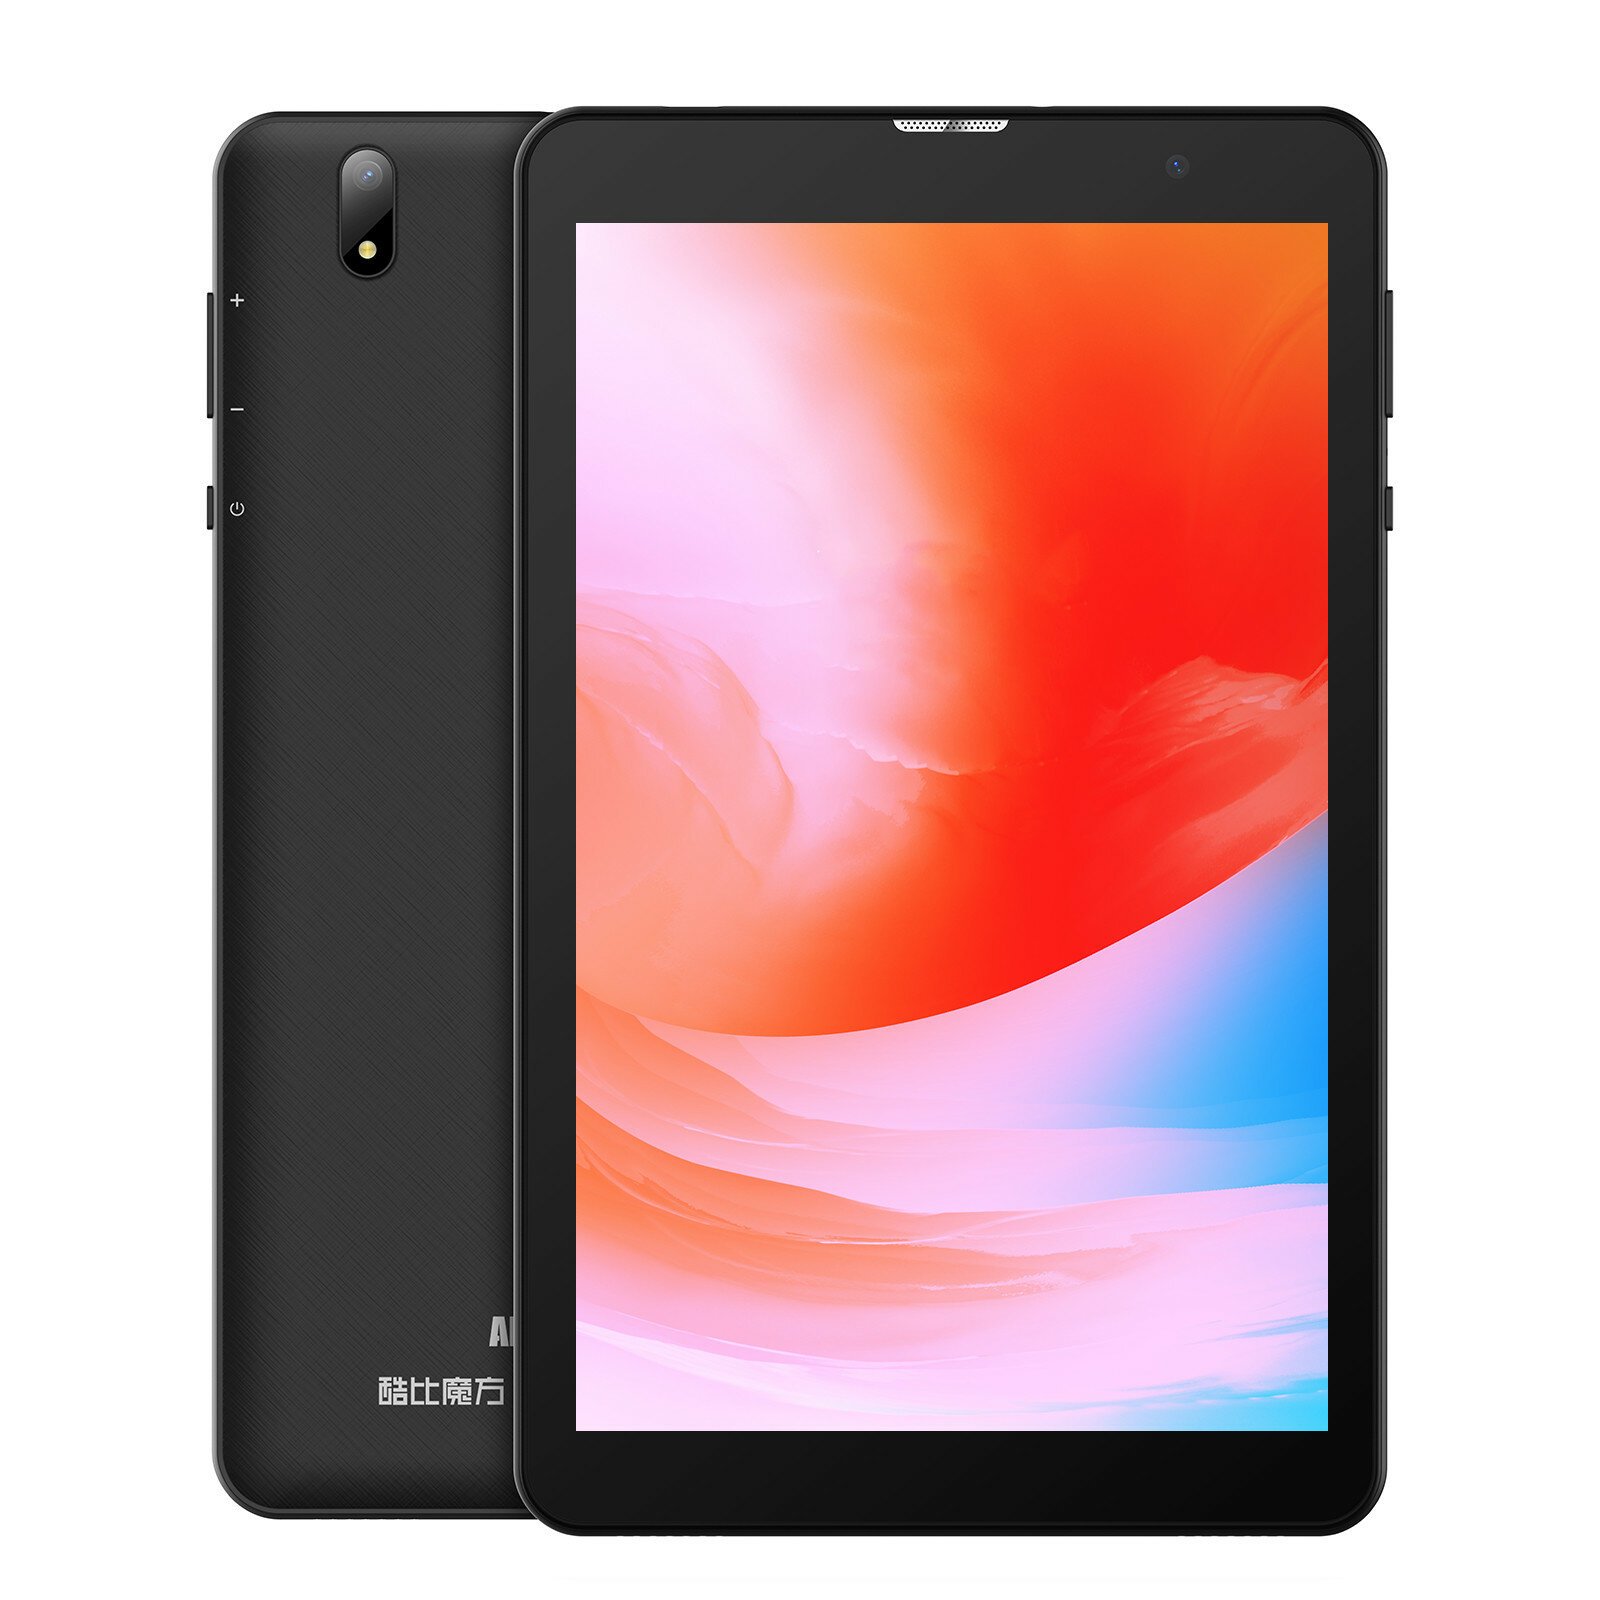 Image of Alldocube Smile 1 UNISOC T310 Quad Core 3GB RAM 32GB ROM 4G LTE 8 Inch Android 11 Tablet